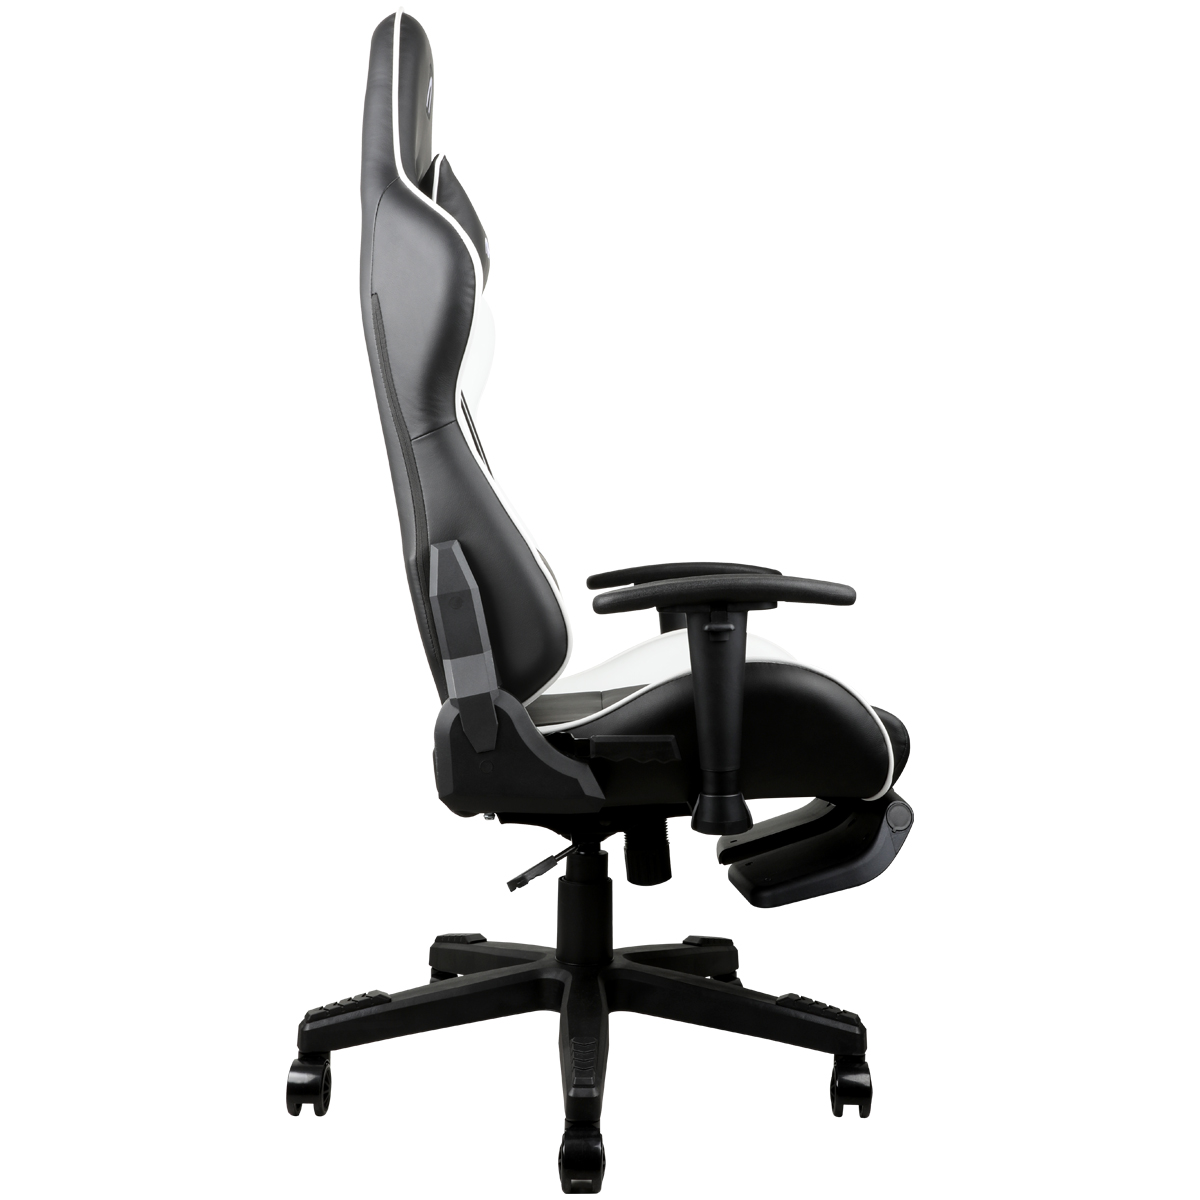 AGC21(White) Gaming Chair ABKO